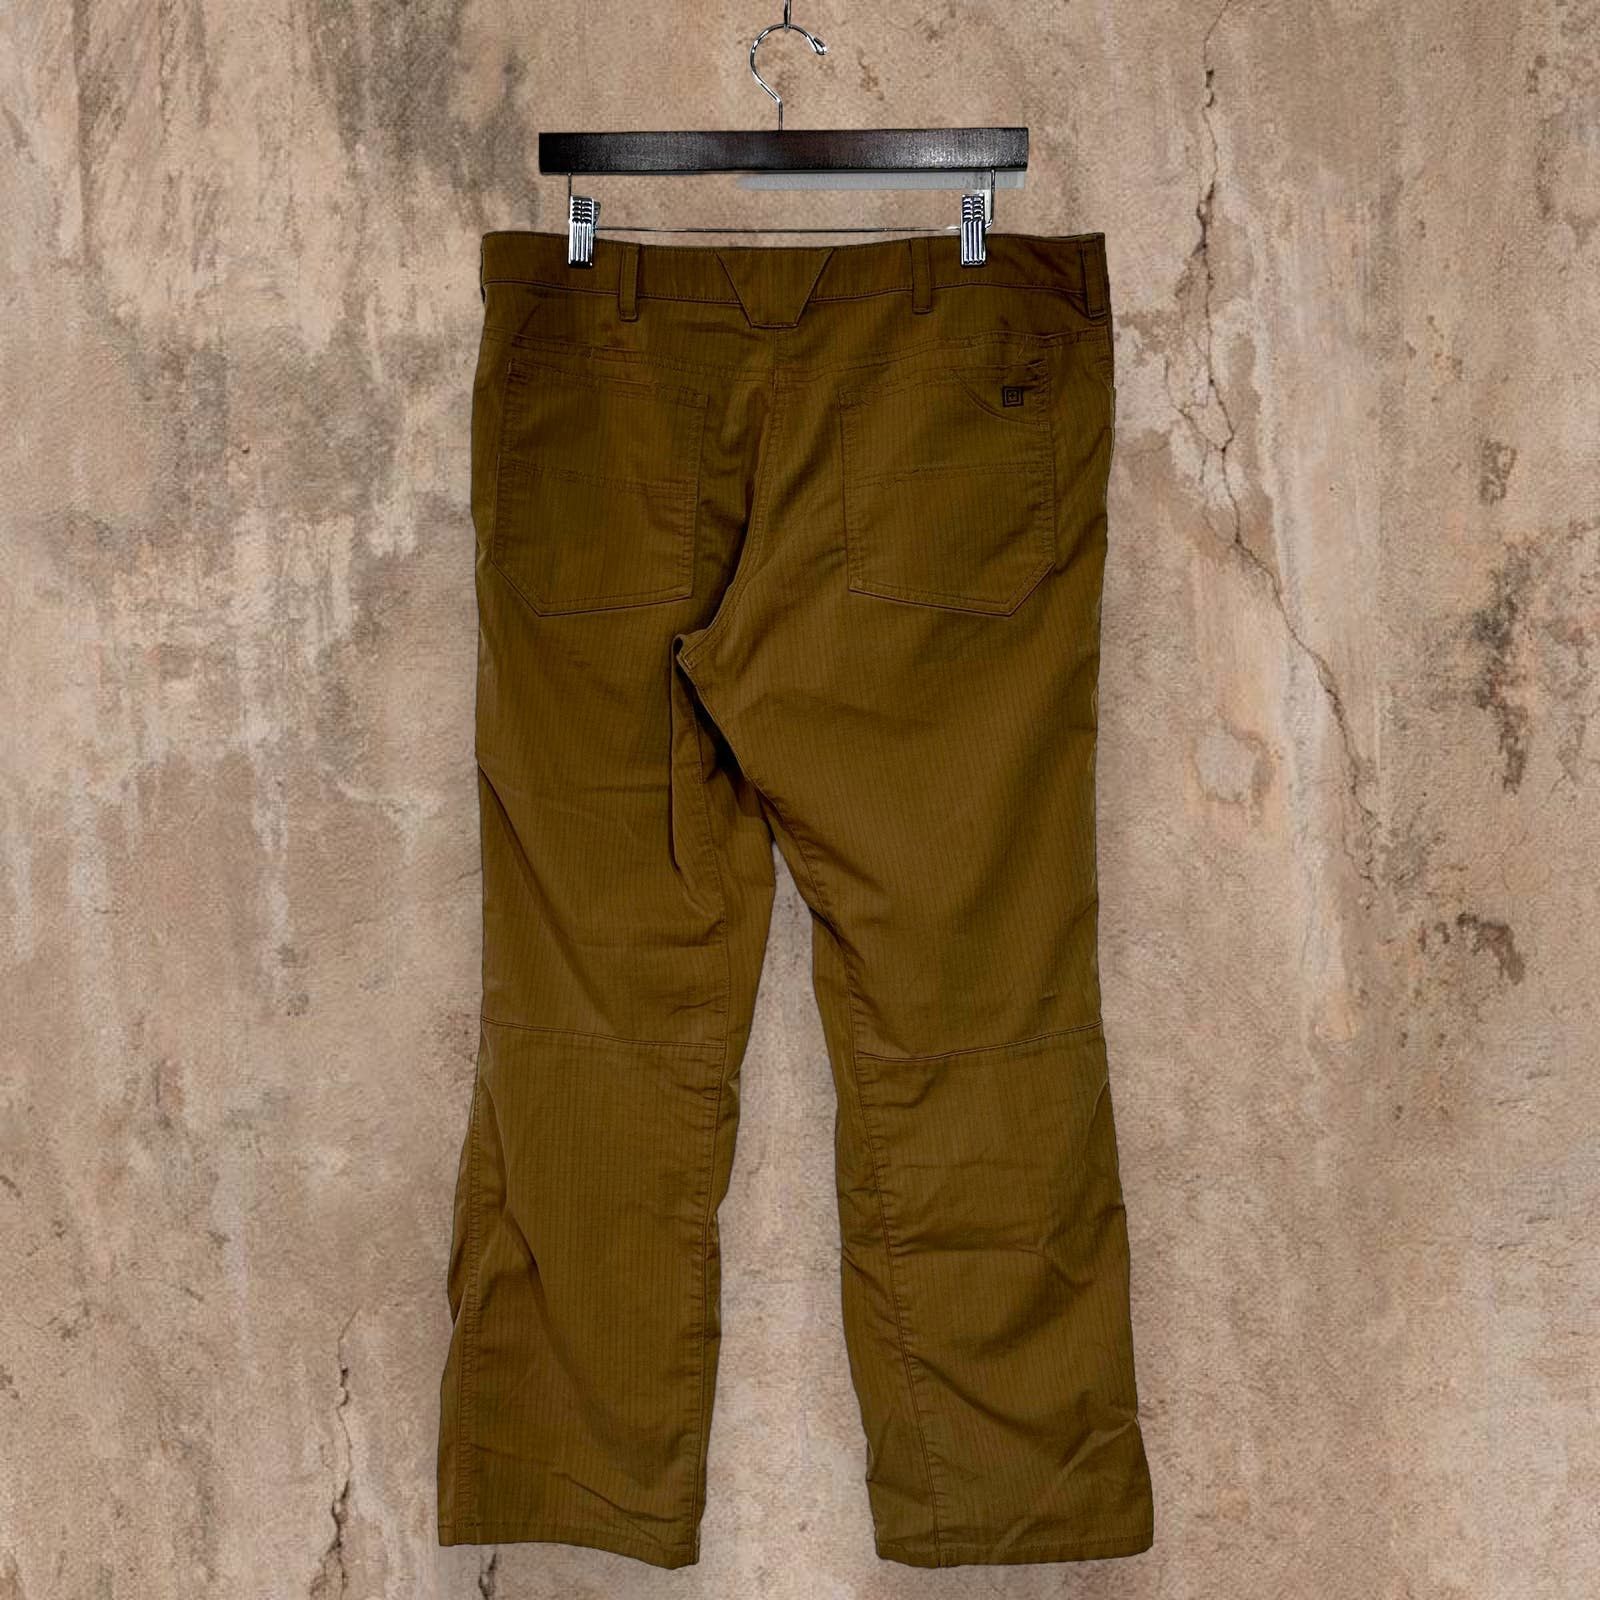 Vintage Vintage 5.11 Tactical Pants Tan Baggy Fit Cargos 90s Size US 36 / EU 52 - 1 Preview